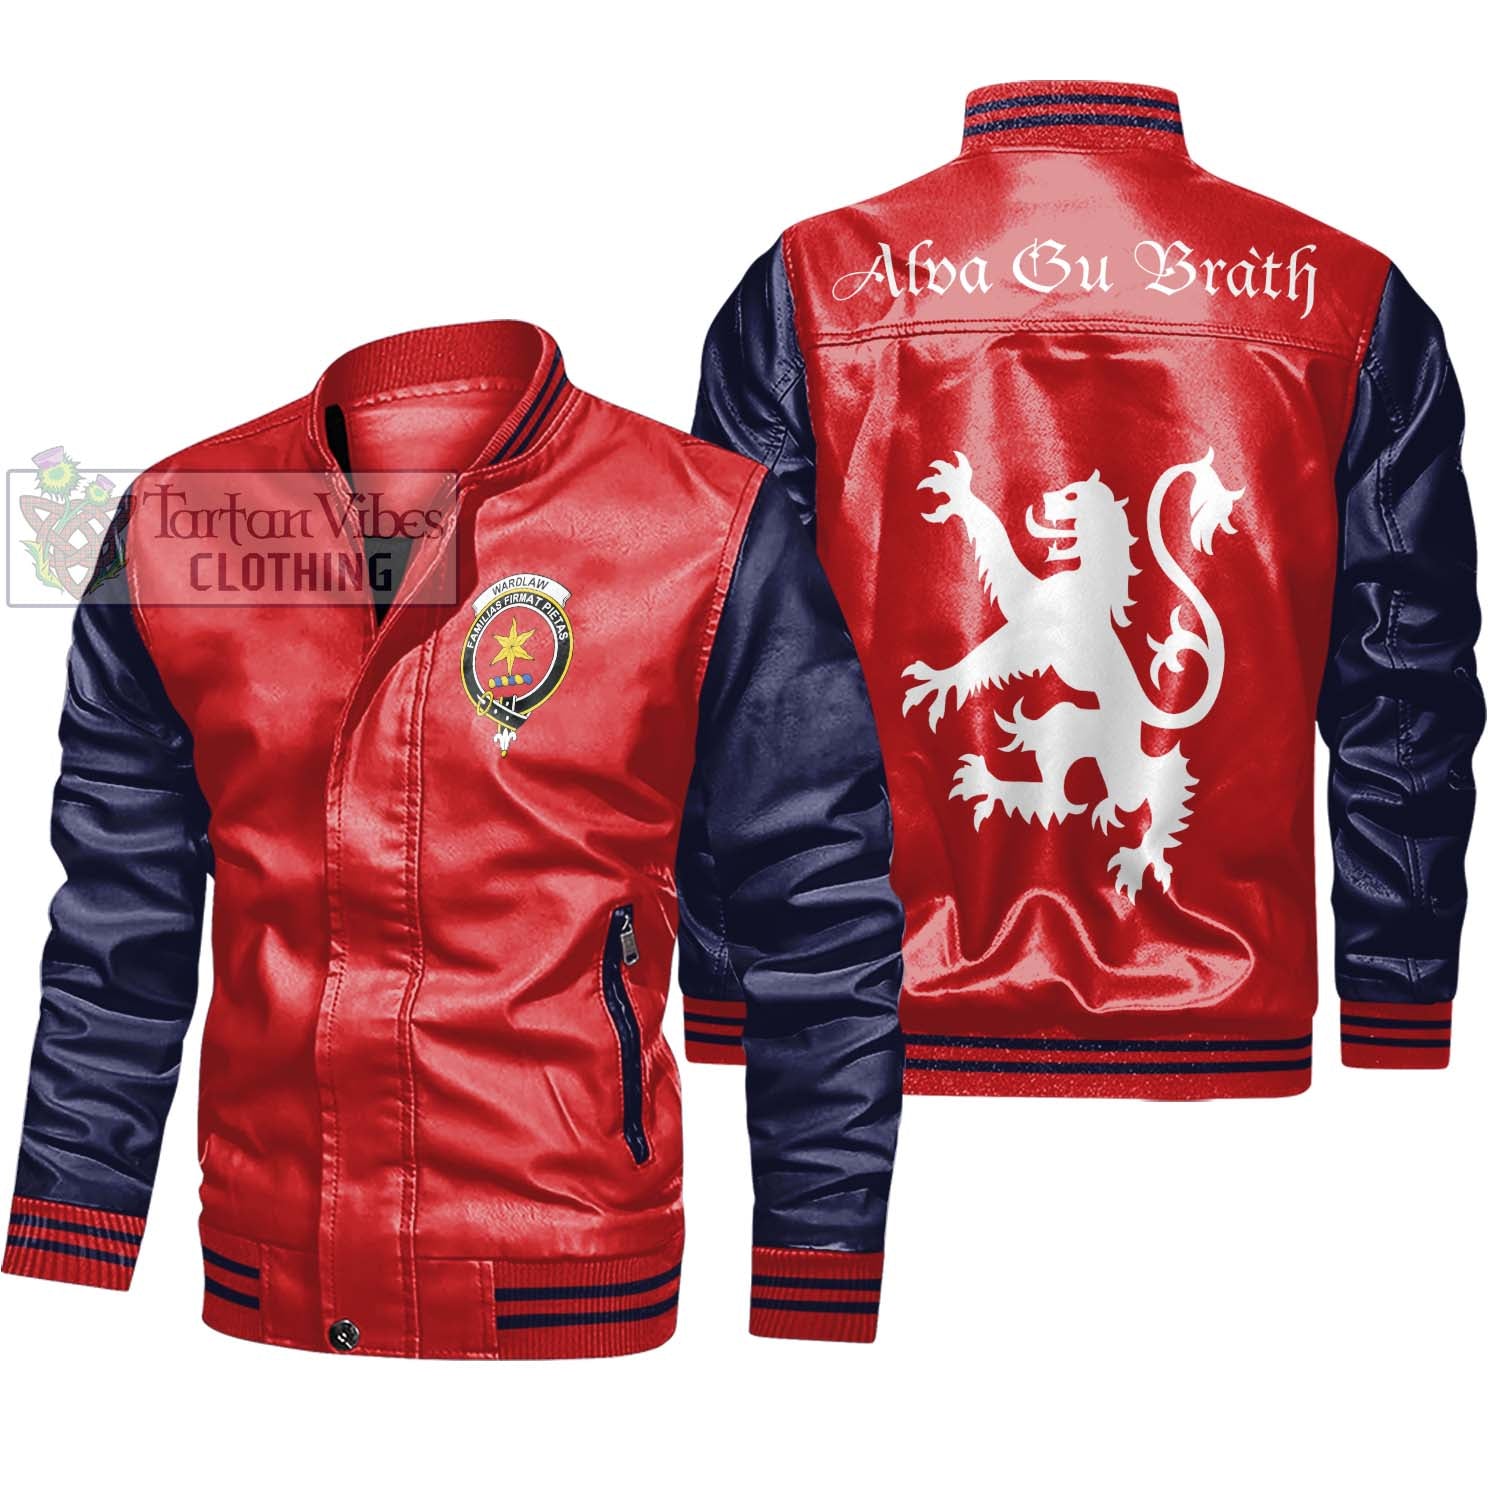 Tartan Vibes Clothing Wardlaw Family Crest Leather Bomber Jacket Lion Rampant Alba Gu Brath Style